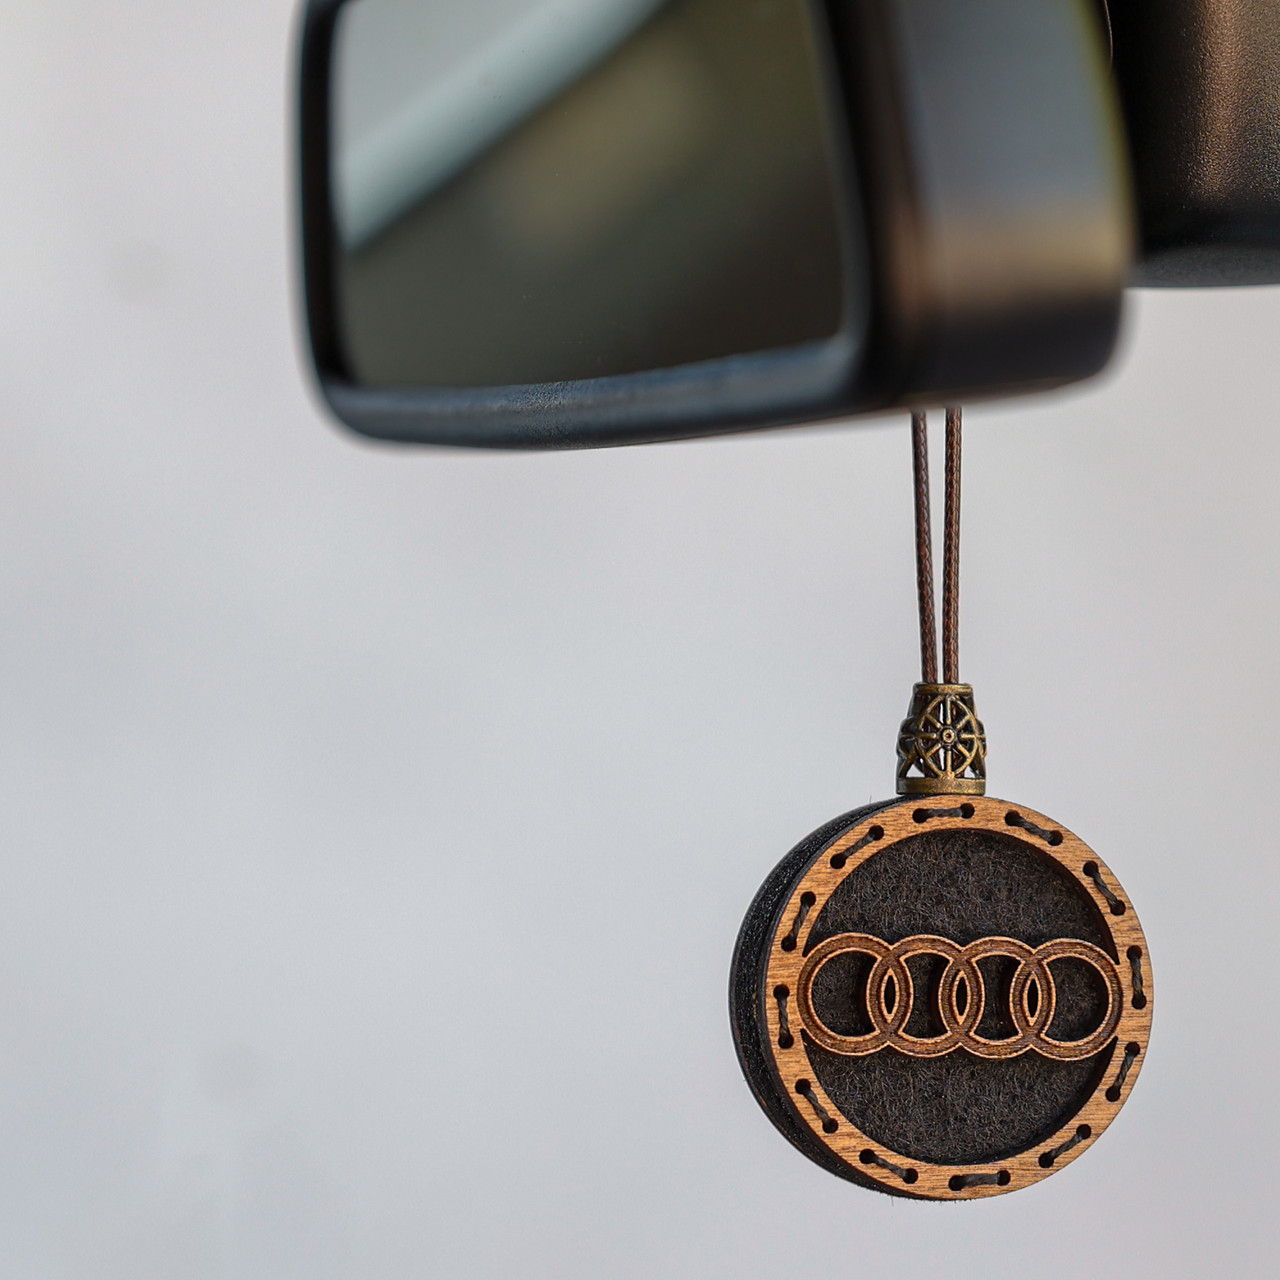 Автомобильные ароматизаторы Audi в Украине. Сравнить цены и купить